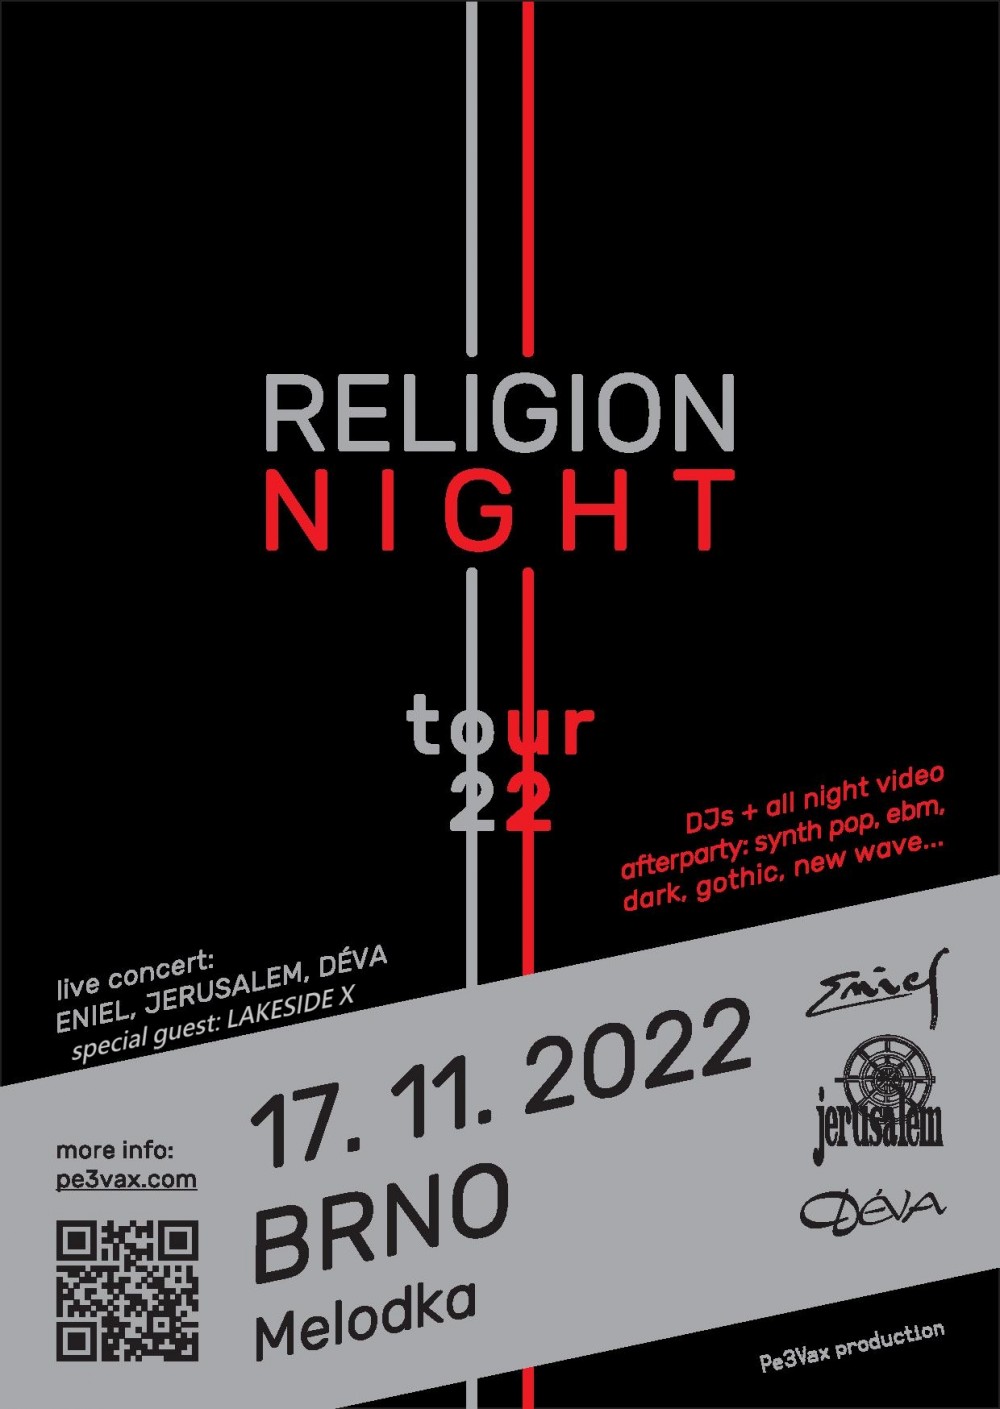 Brno: Religion Night Tour